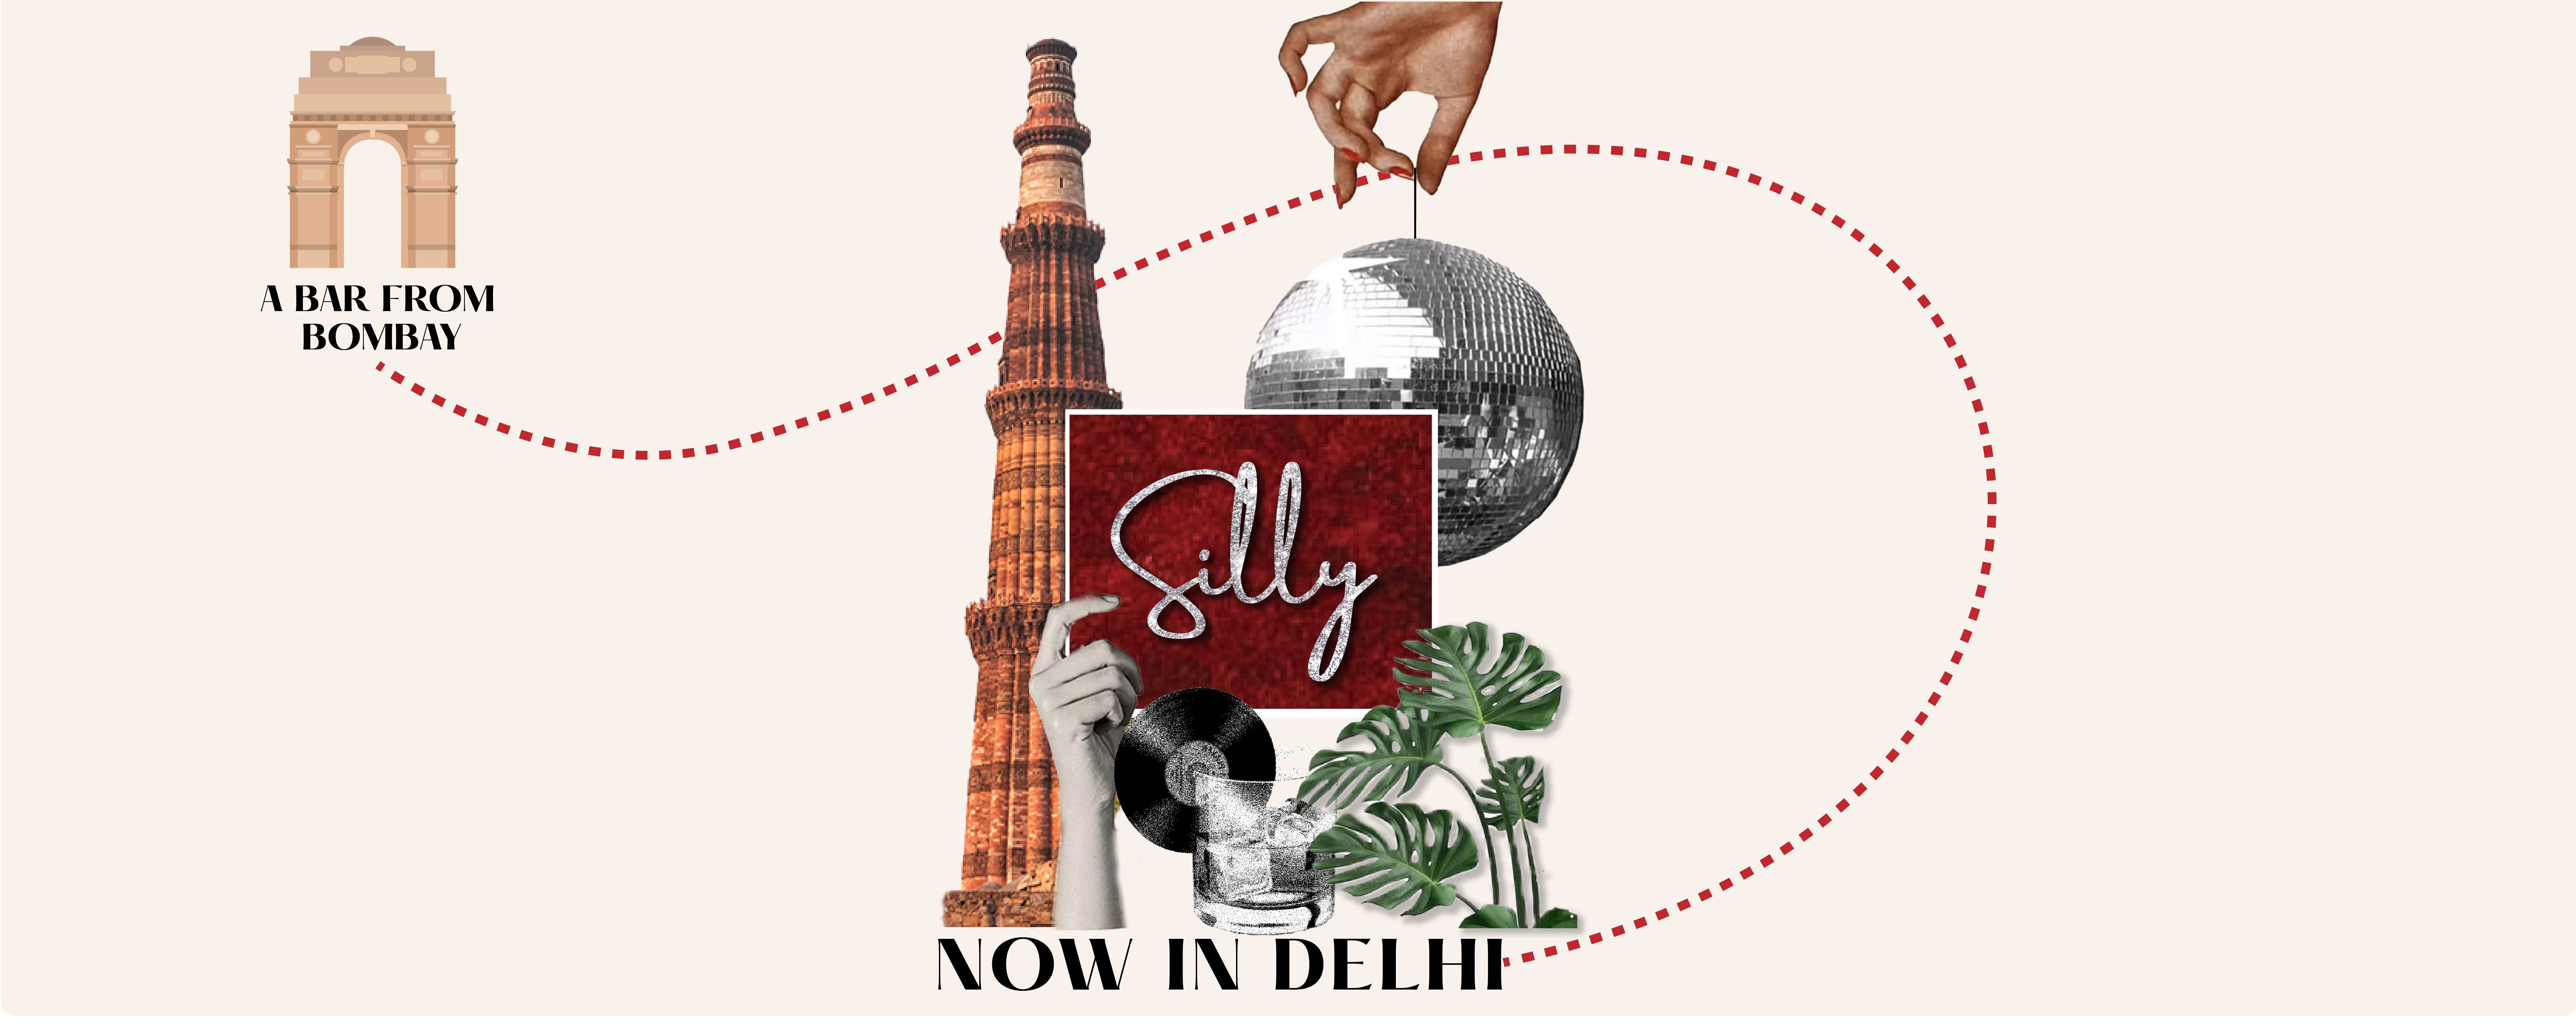 Silly Gastropub in Delhi Launch